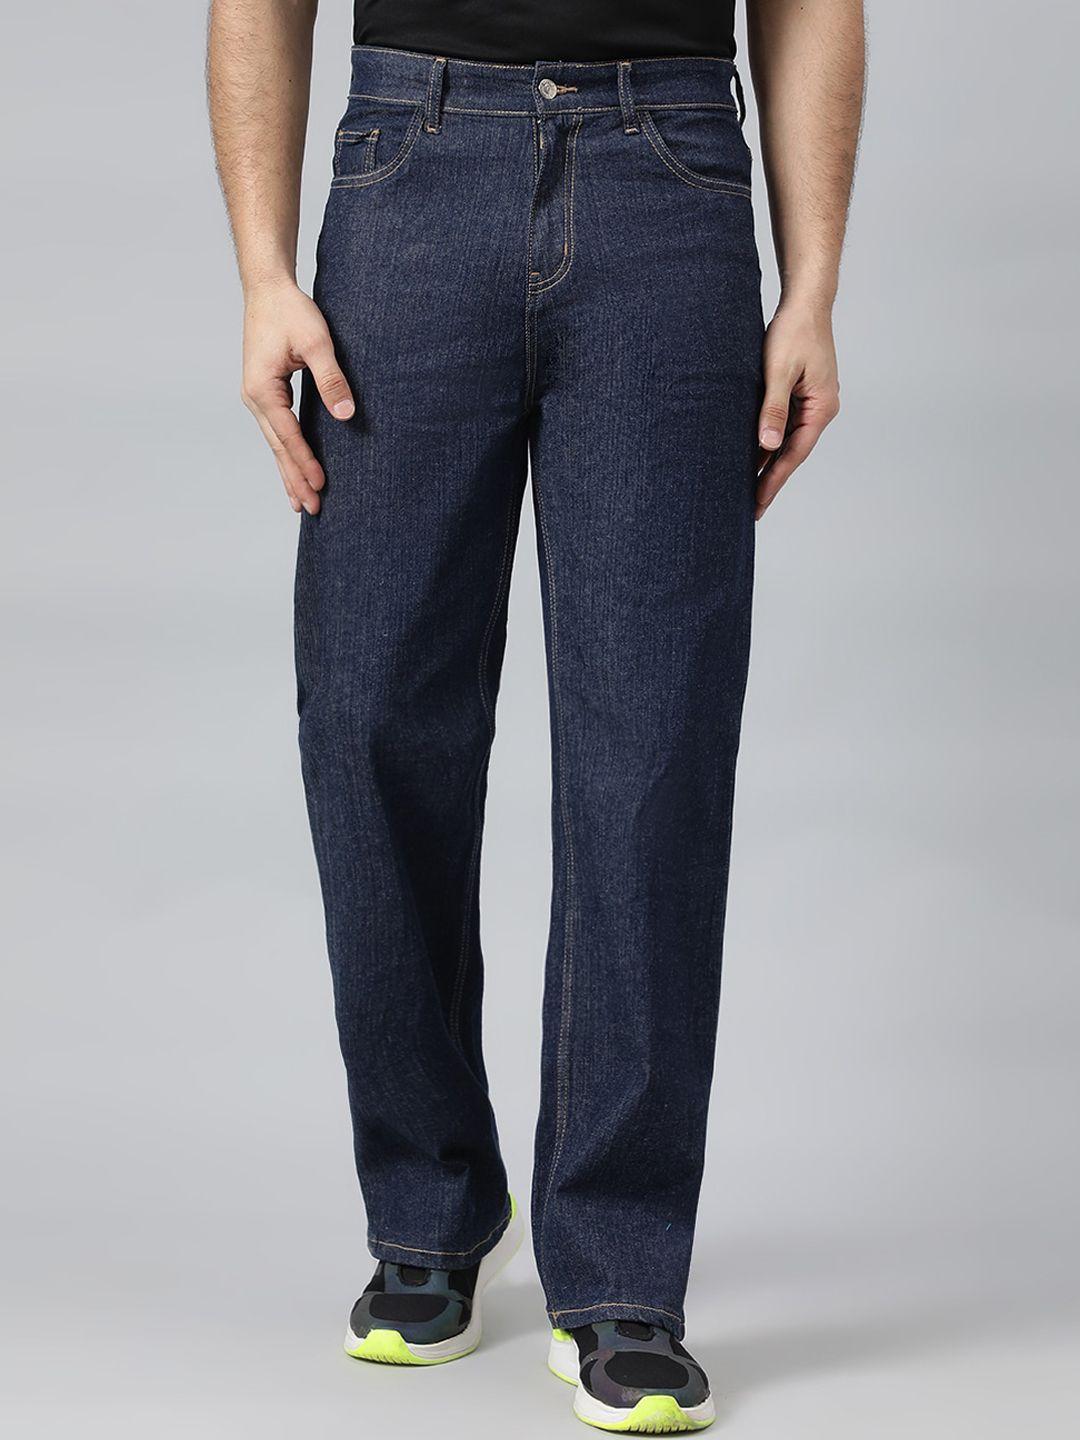 kotty men blue jean cotton low-rise stretchable jeans